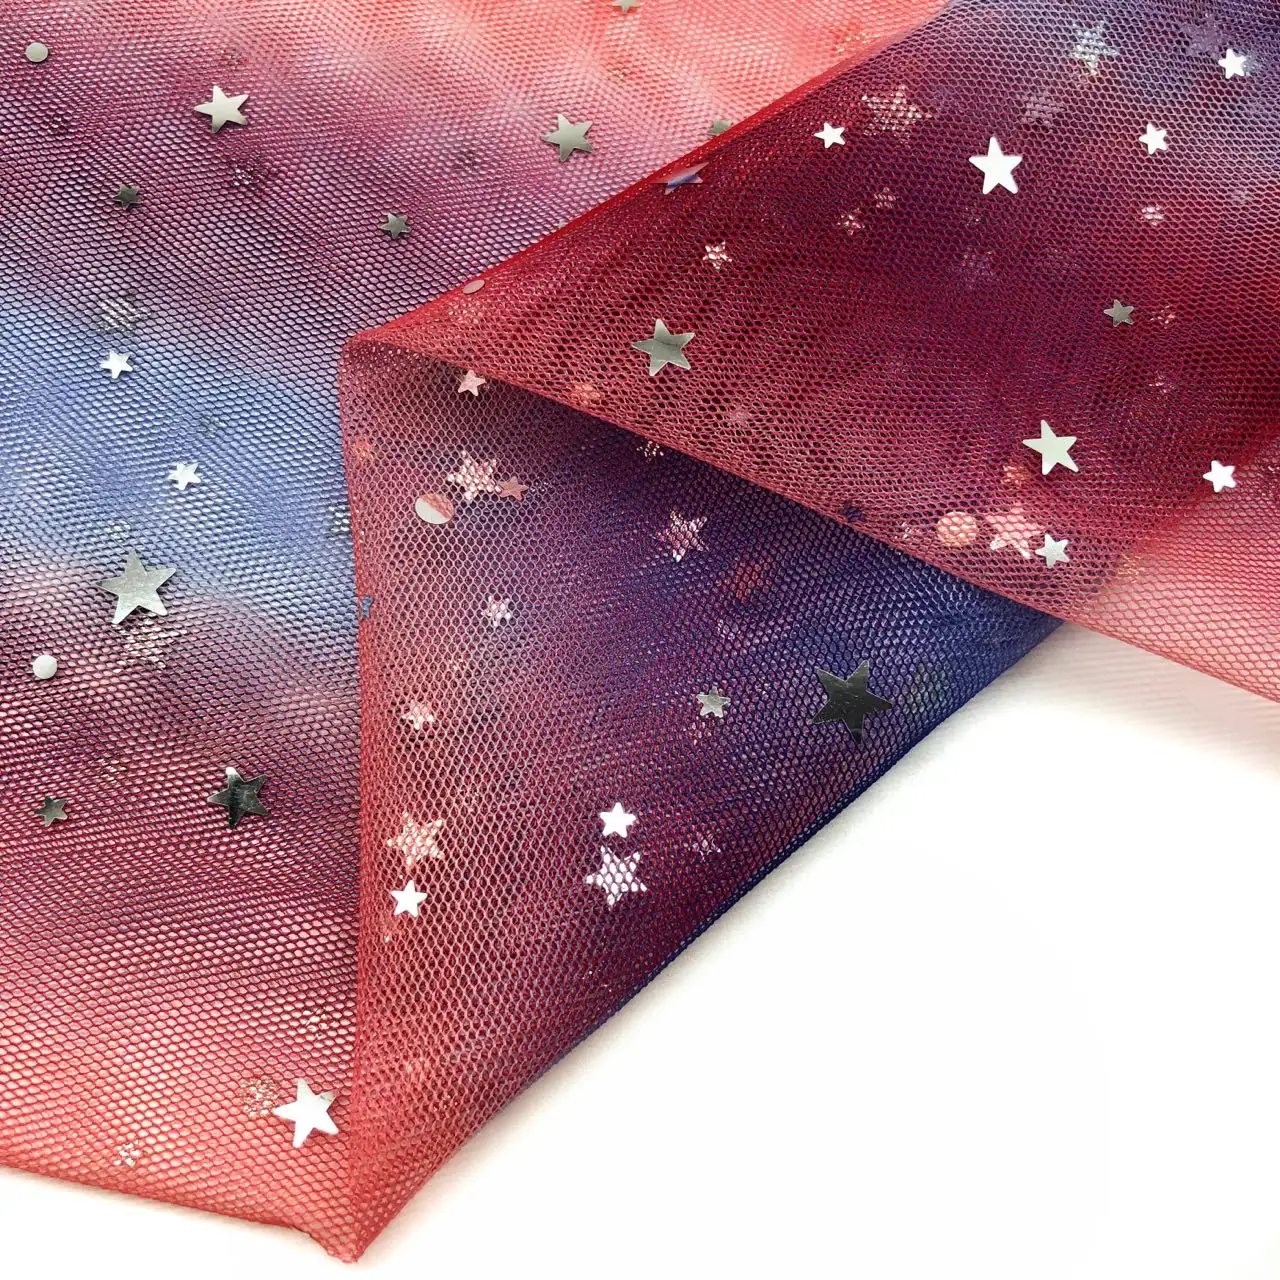 Nouveau design meilleure qualité 100% polyester maille de mariée tulle tissu en paillettes métalliques brillant étoile et lune sequin tissu pour robe